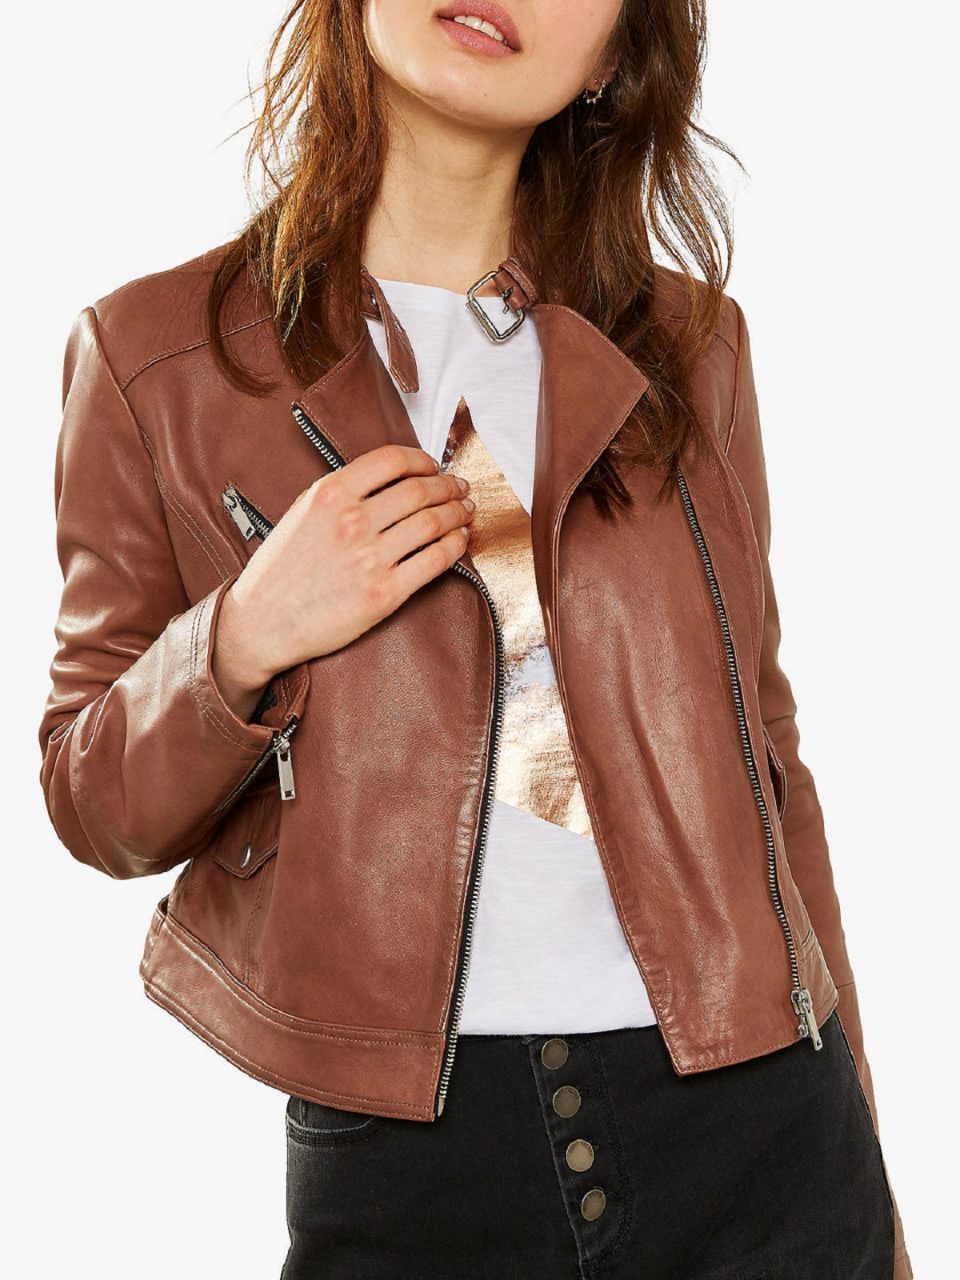 Tan Leather Jacket Women